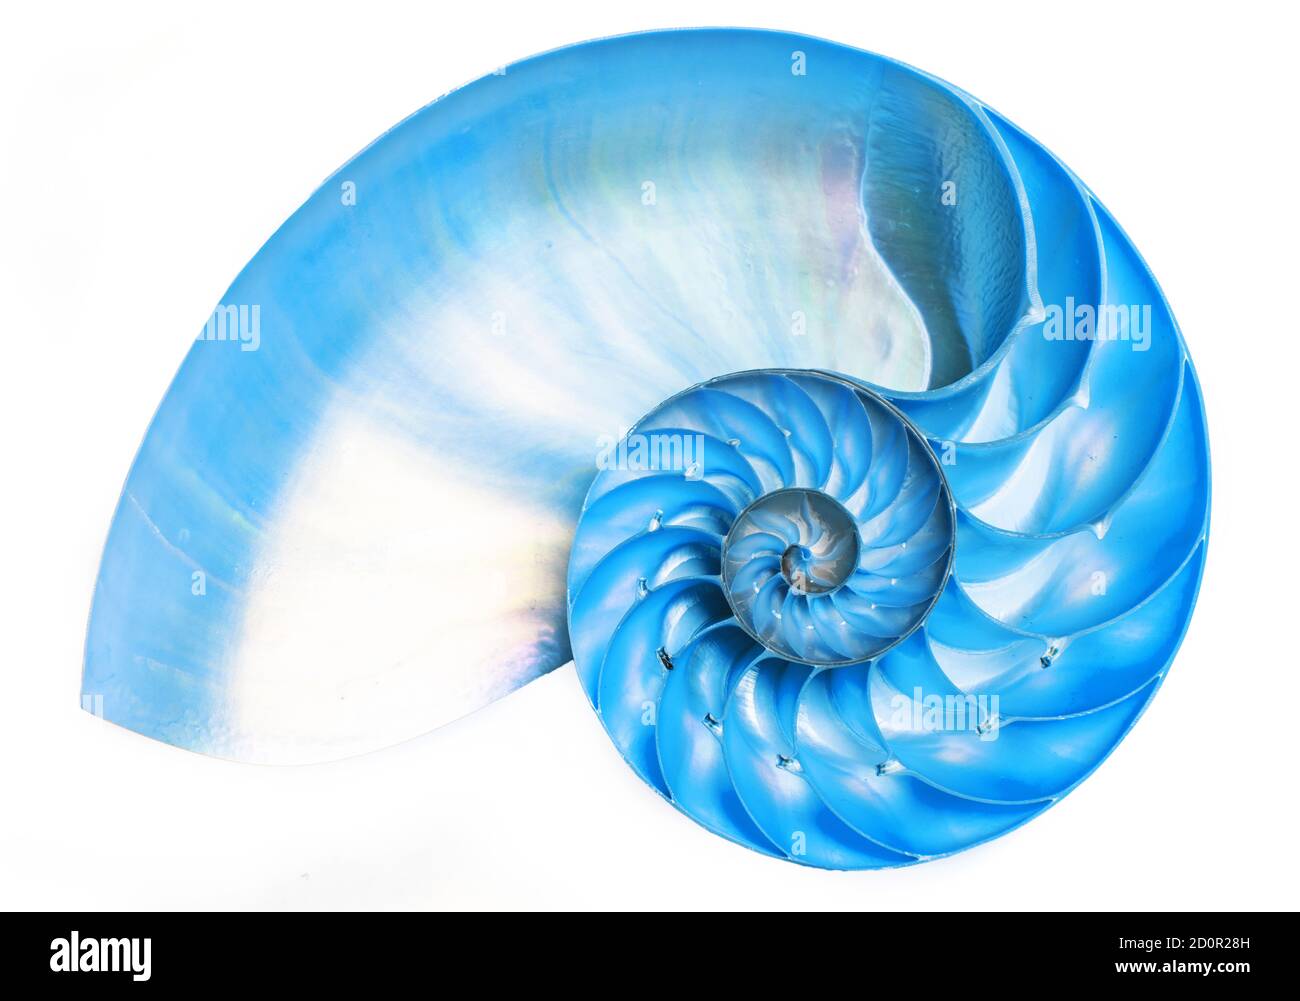 Detailreiche, halbierte Schale eines gekammerten nautilus (Nautilus pompilius) zeigt ein schönes Spiralmuster. Isoliert auf Weiß Stockfoto